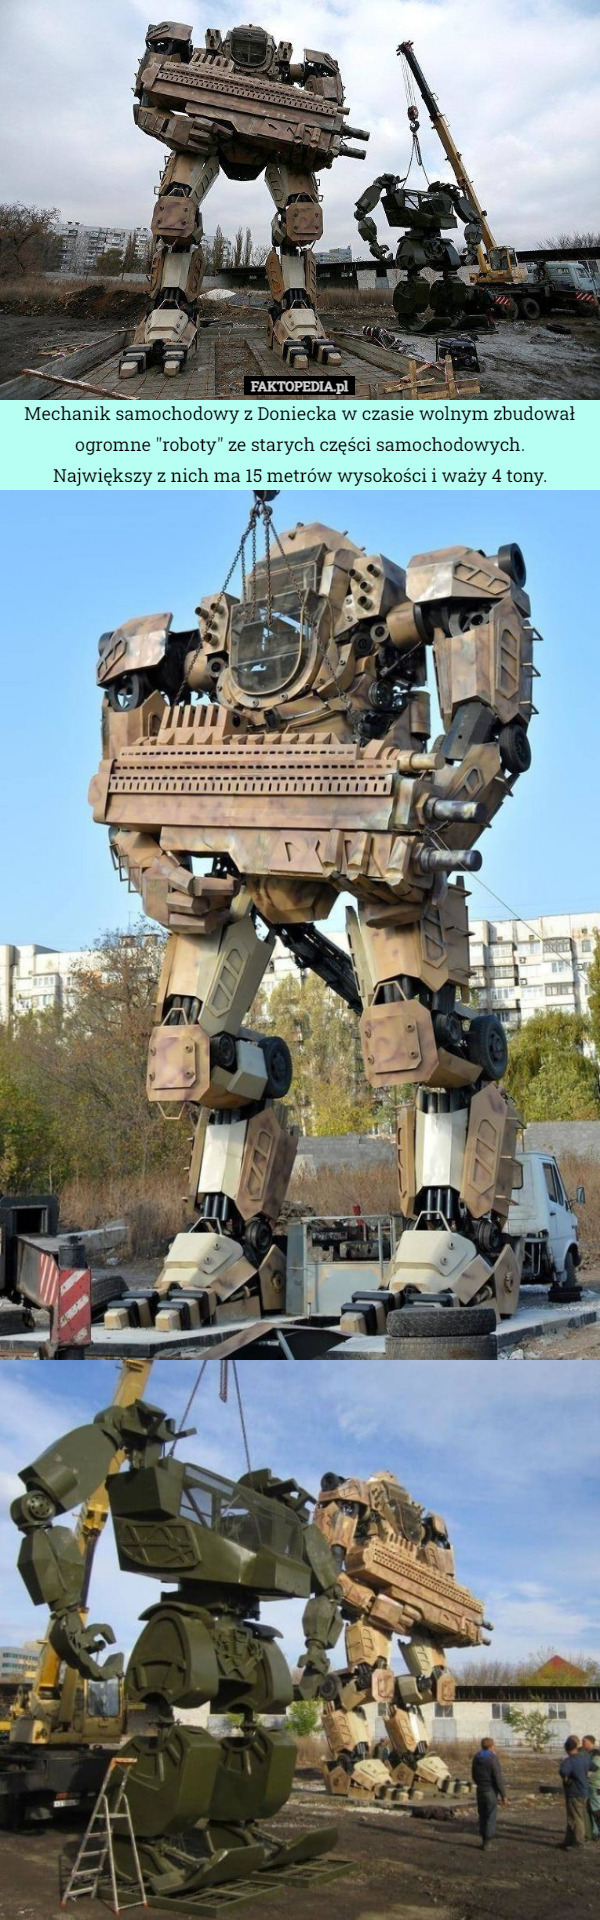 Mechanik samochodowy z Doniecka w czasie wolnym zbudował ogromne "roboty" ze starych części samochodowych.
 Największy z nich ma 15 metrów wysokości i waży 4 tony. 